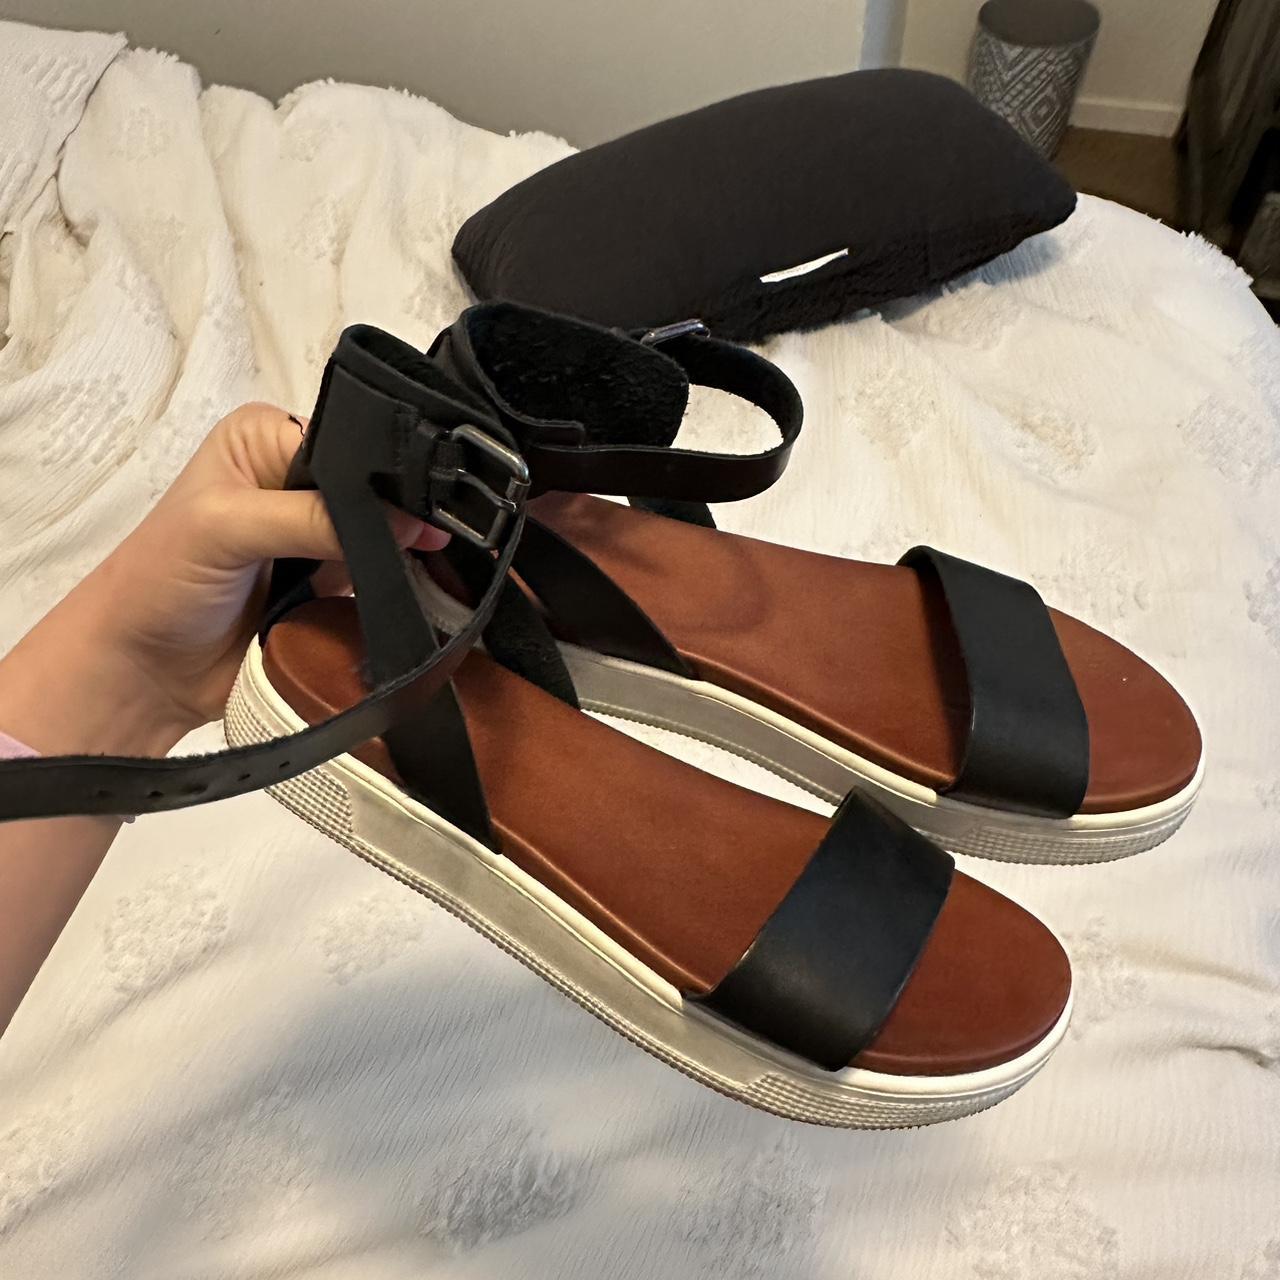 MIA sandals - Depop